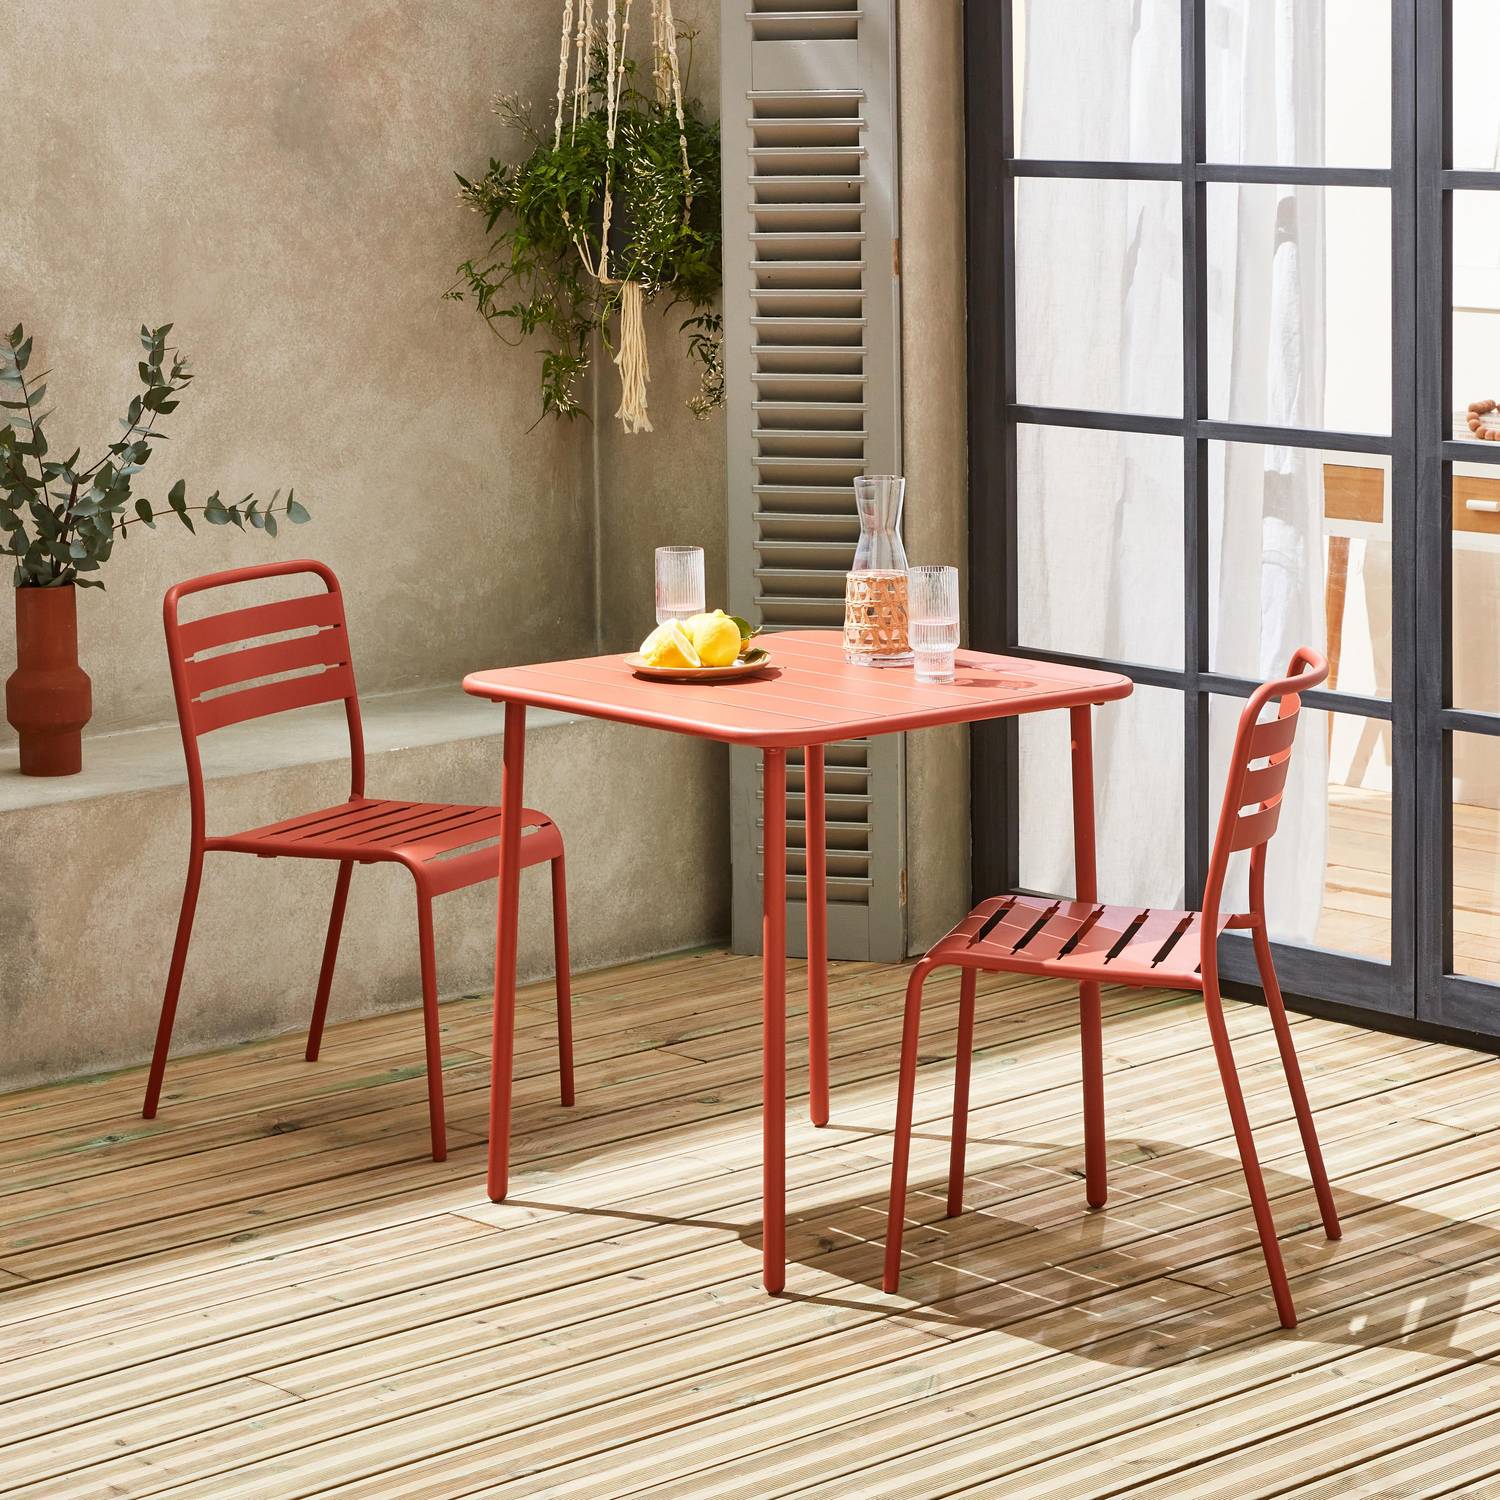 Amélia terracotta metalen tuintafel met 2 stoelen, latten en afgeronde hoeken, roestbestendige afwerking Photo1